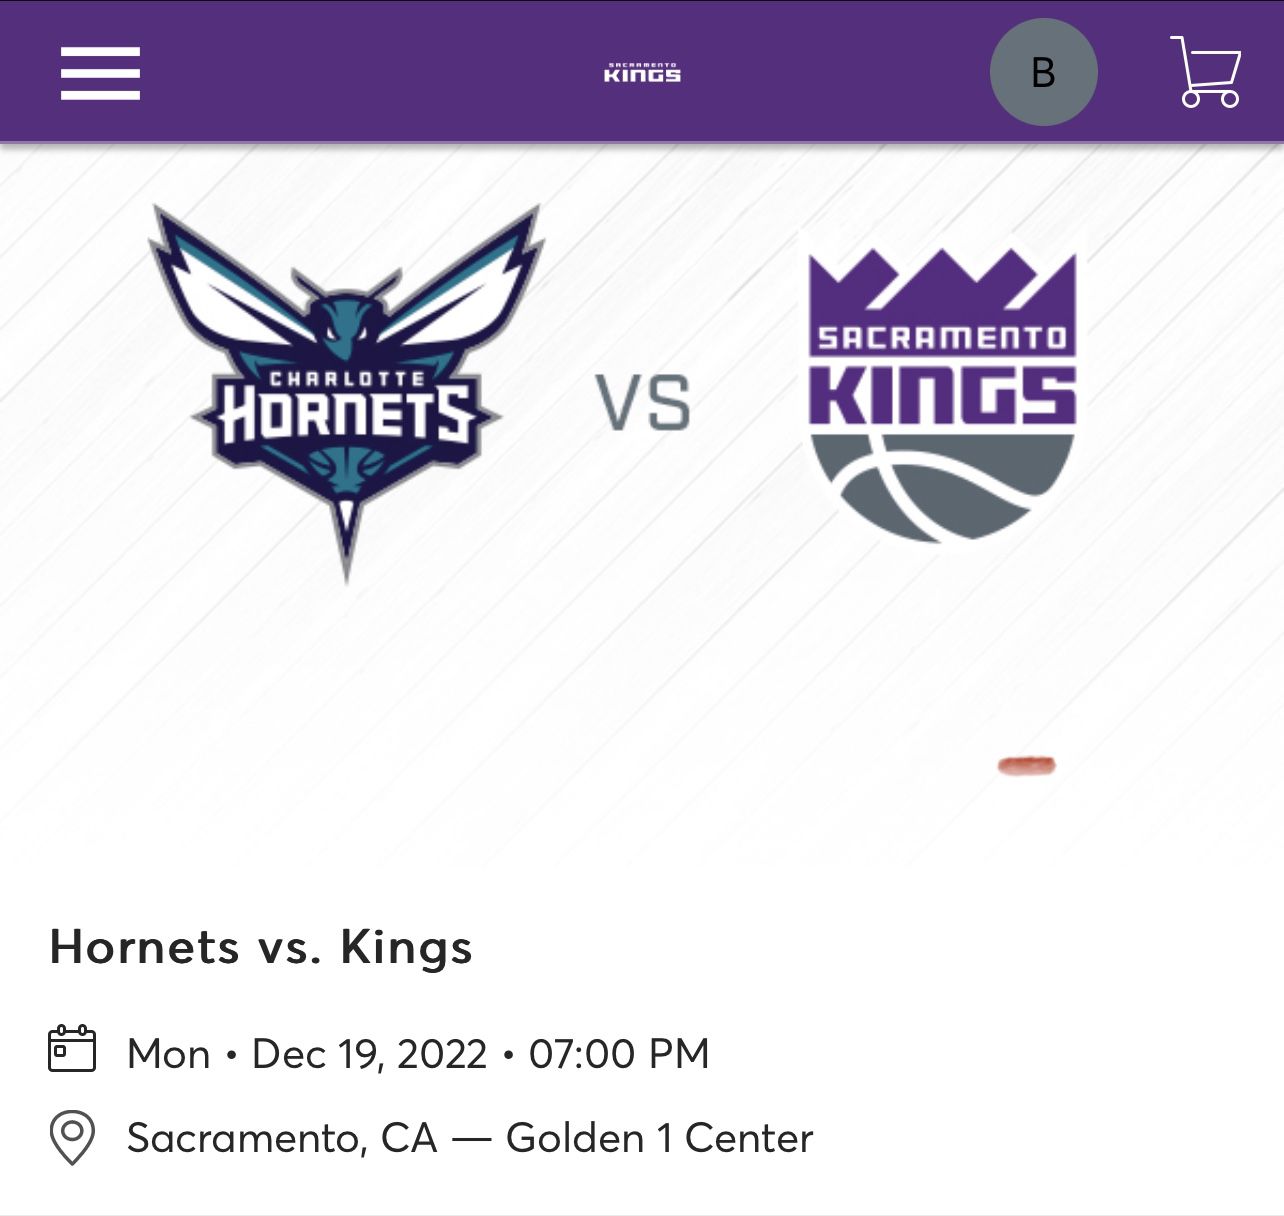 Hornets vs Kings 12/19 *Lower level*